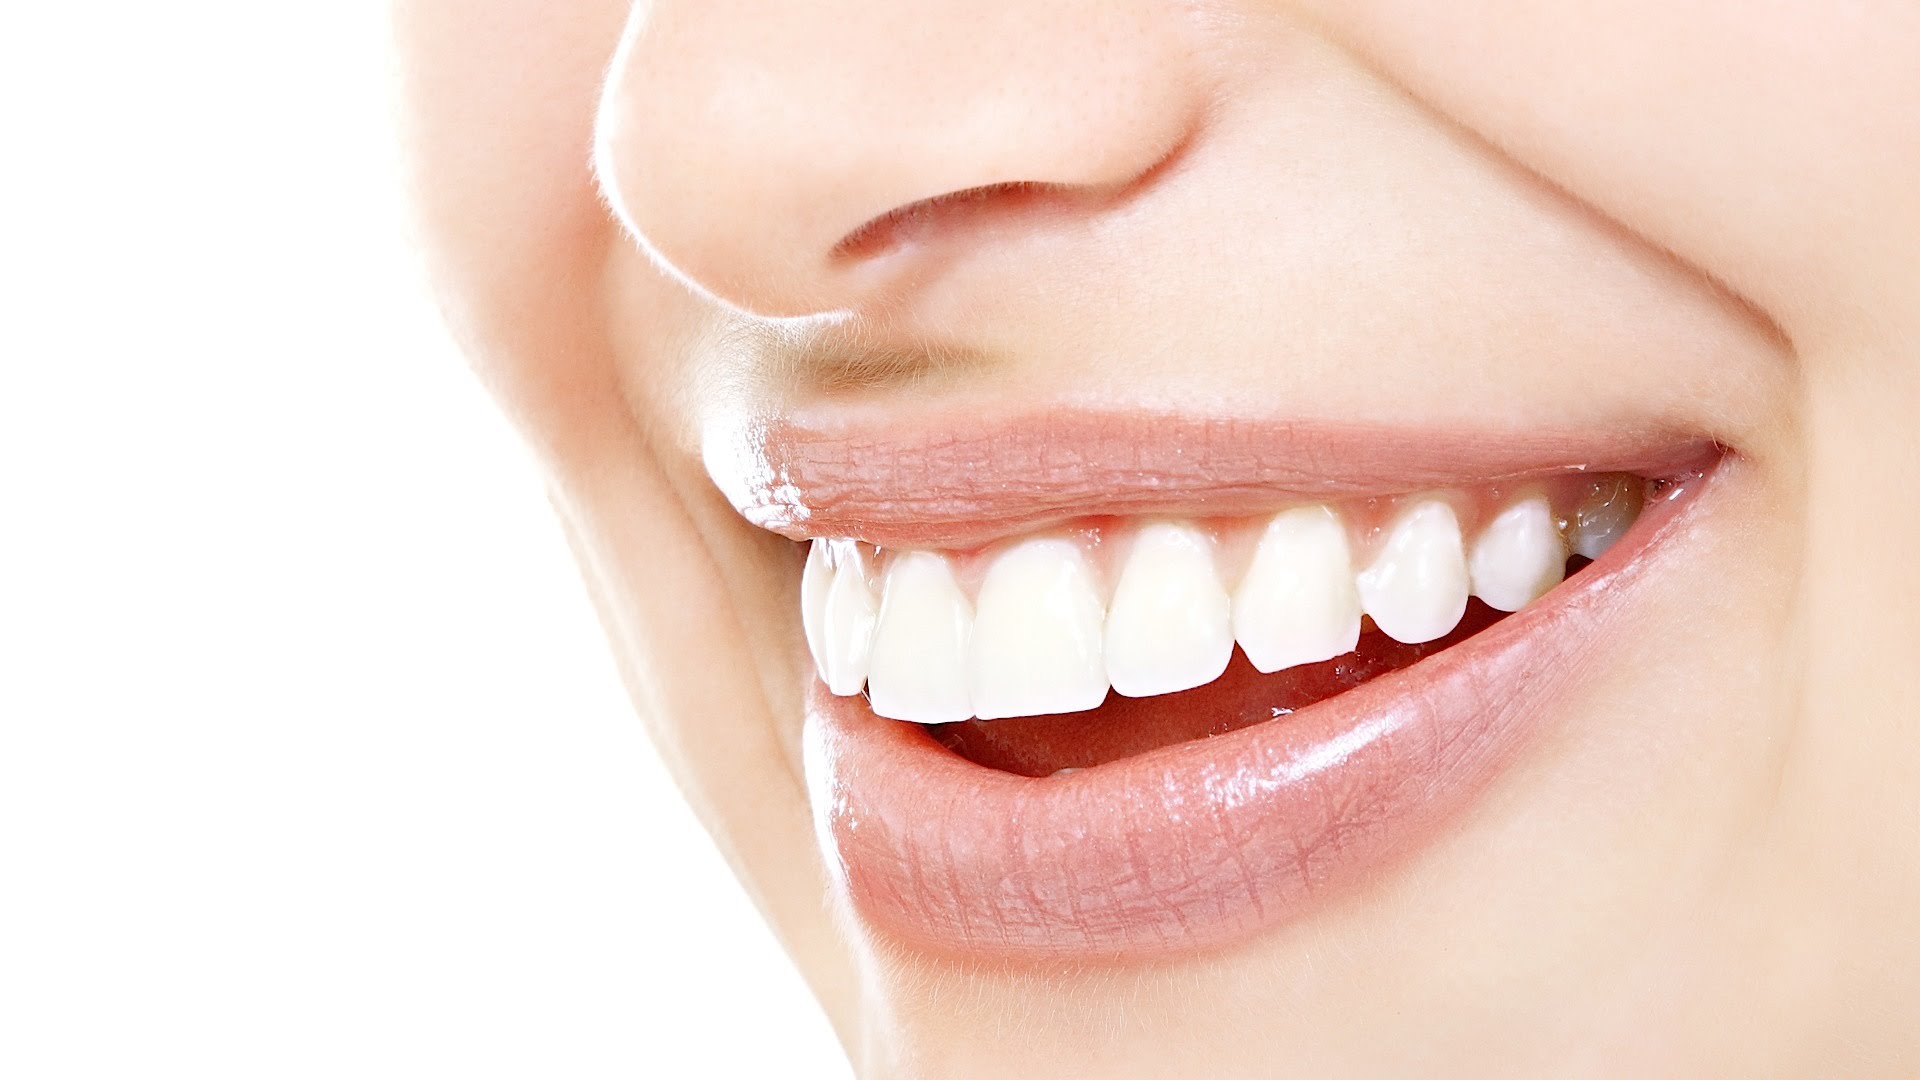 الأسنان، كيف نسكن آلامها ونحافظ على نظافتها وصحتها